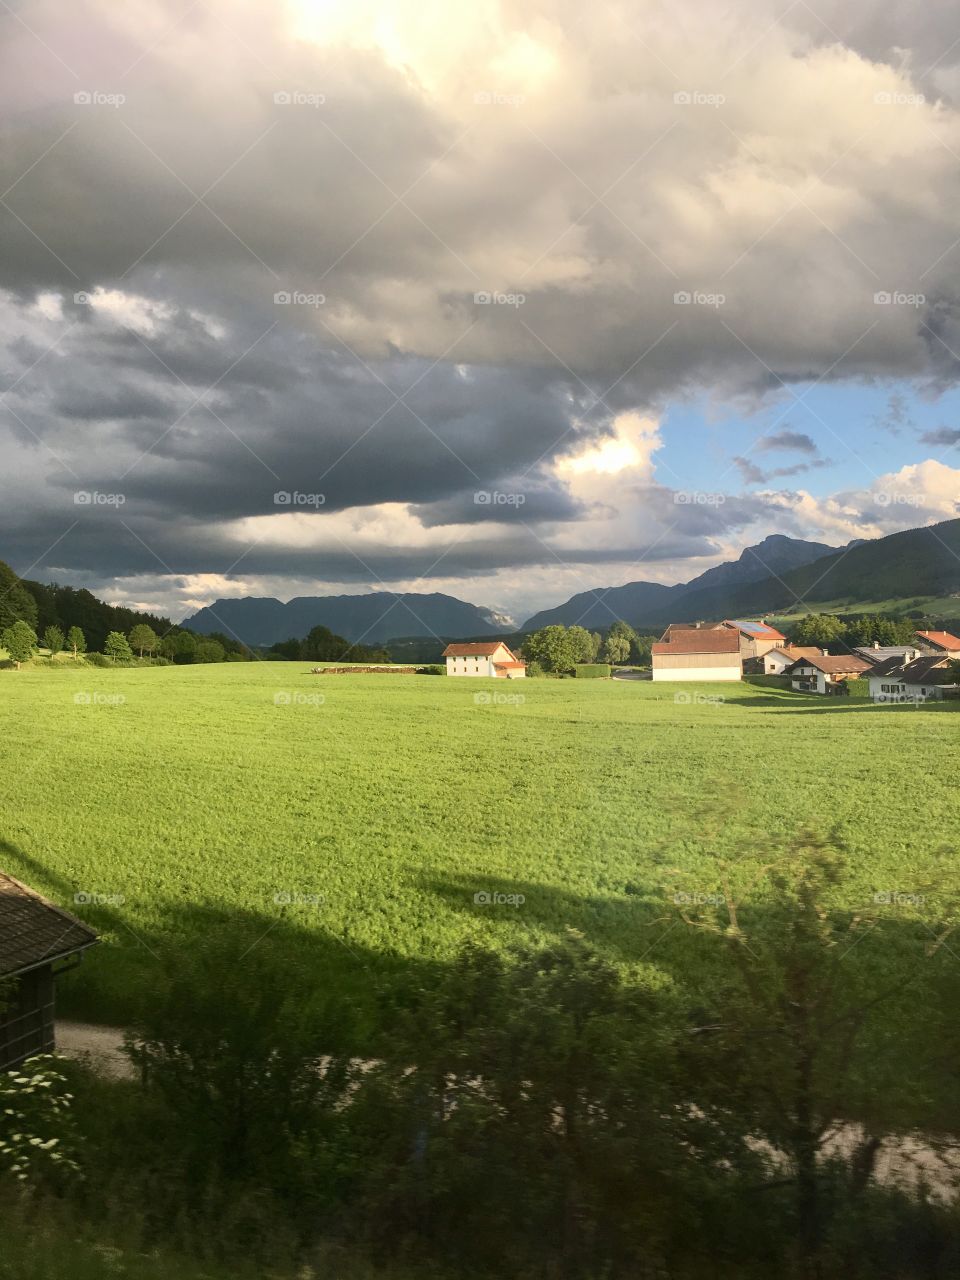 Munich to Salzburg Trip